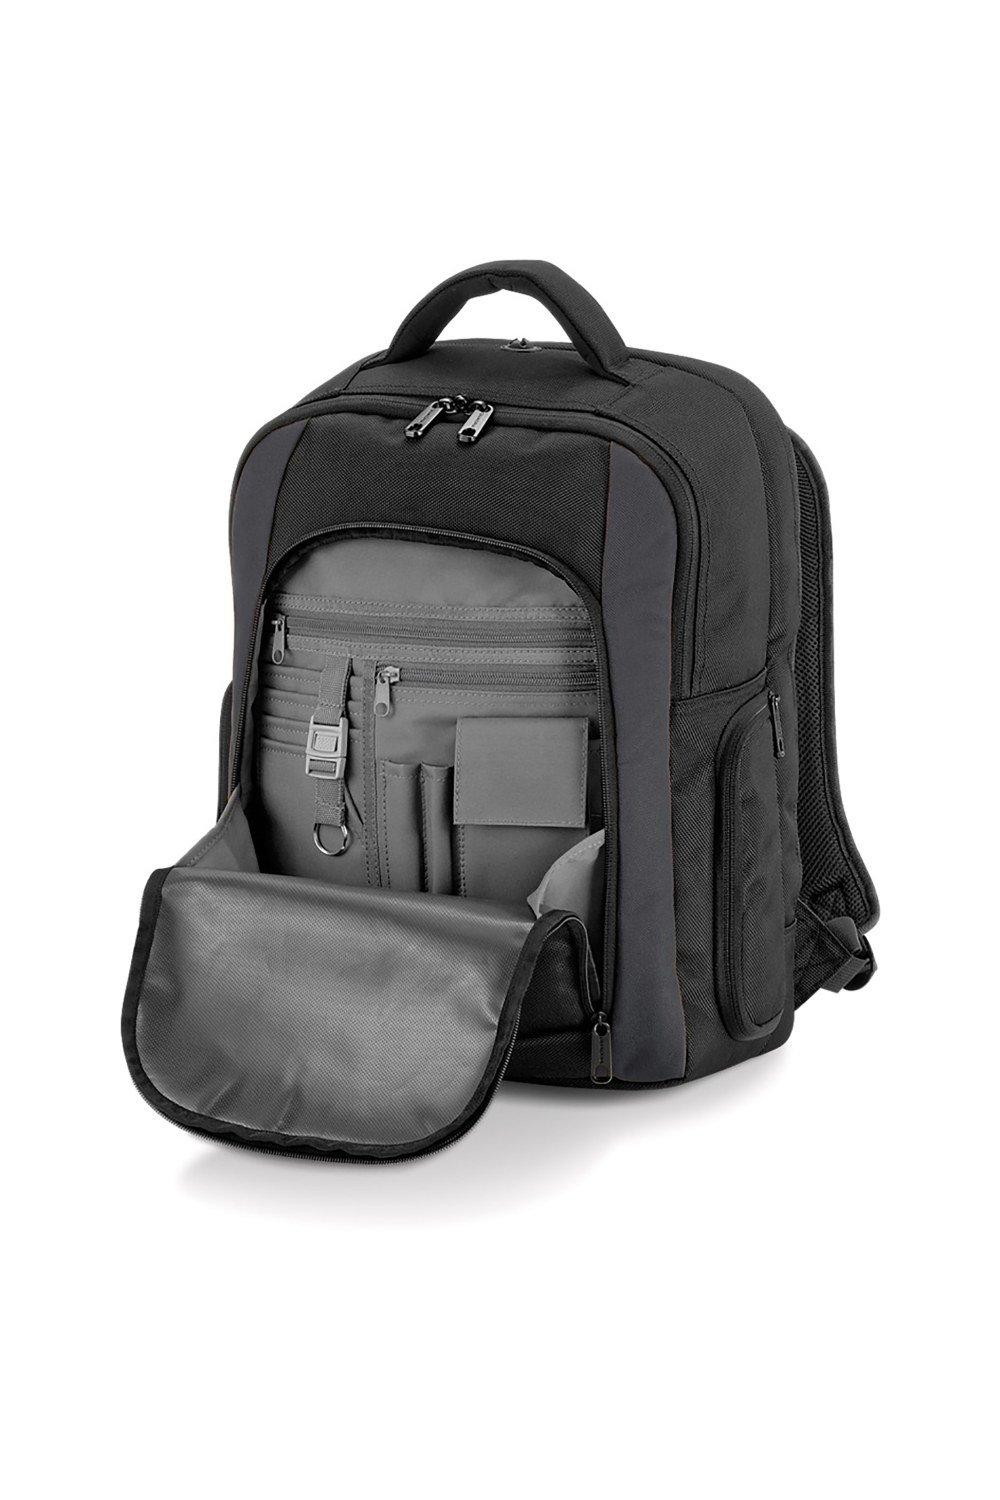 Рюкзак для ноутбука из вольфрама - 23 литра Quadra, черный мате indio barbacua 100 г